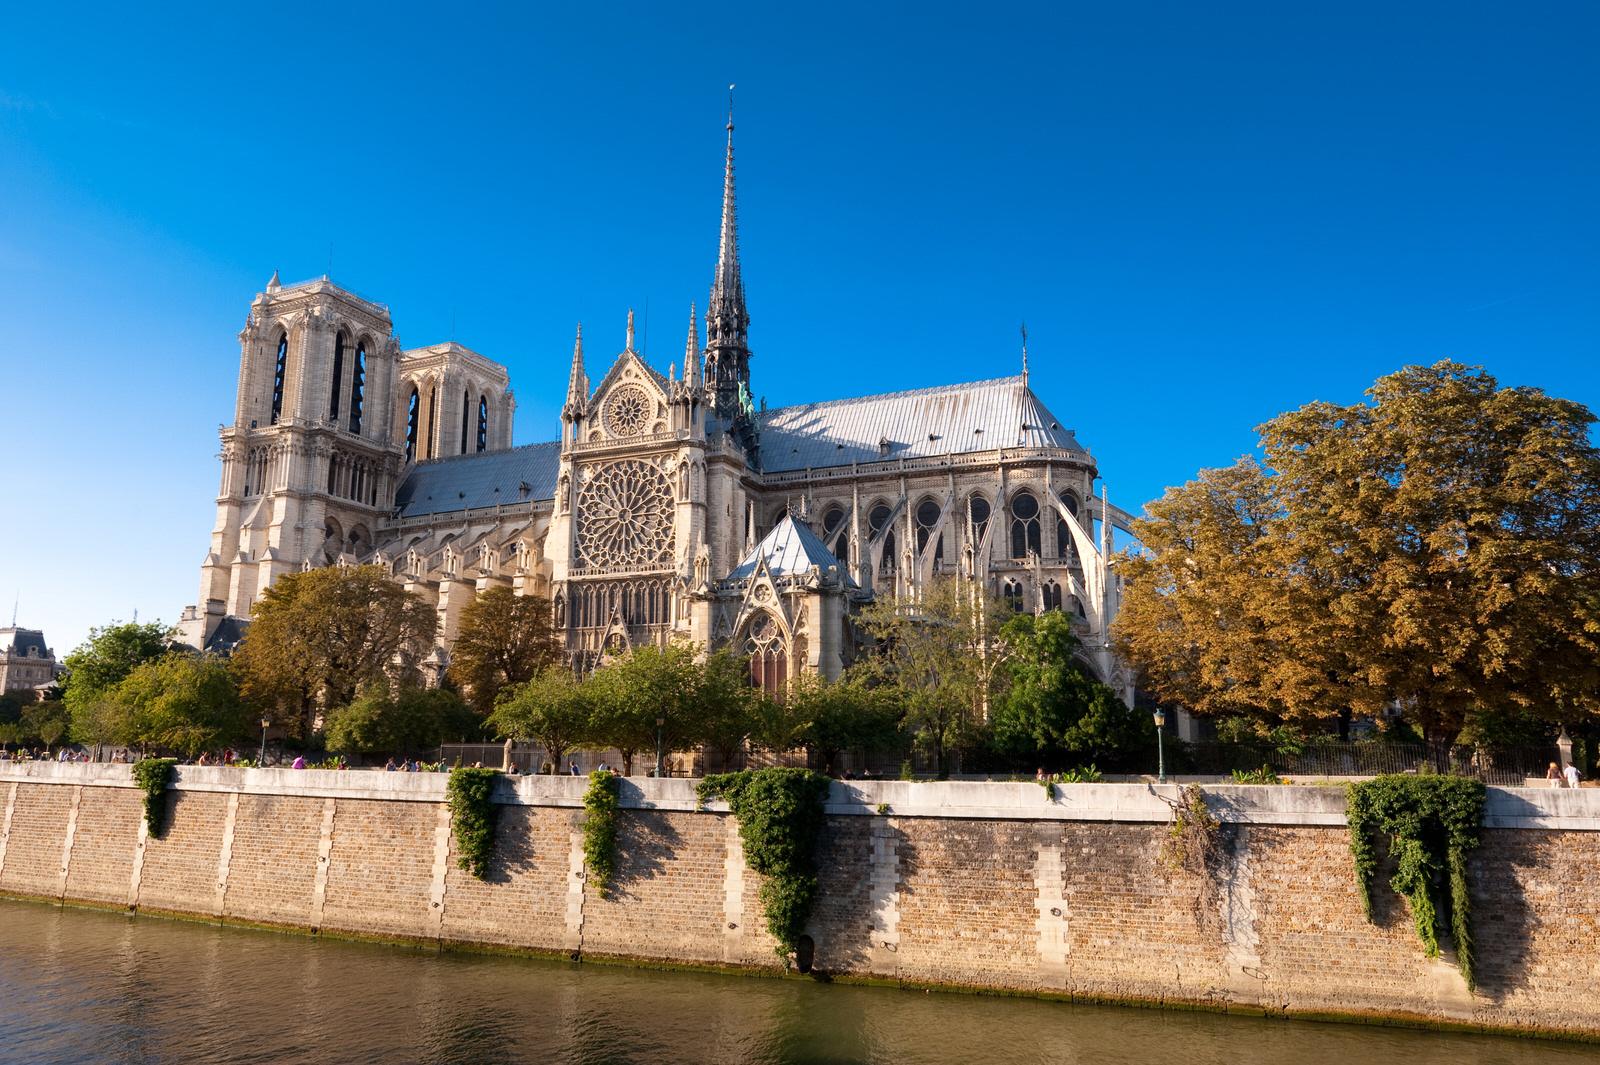 Commencée en 1163, la construction la cathédrale Notre-Dame de Paris s'étend sur environ deux siècles, jusqu'au milieu du XIVe siècle. Après la Révolution française, Notre-Dame bénéficie entre 1845 et 1867 d'une importante restauration, parfois controversée, sous la direction de l'architecte Eugène Viollet-le-Duc. 